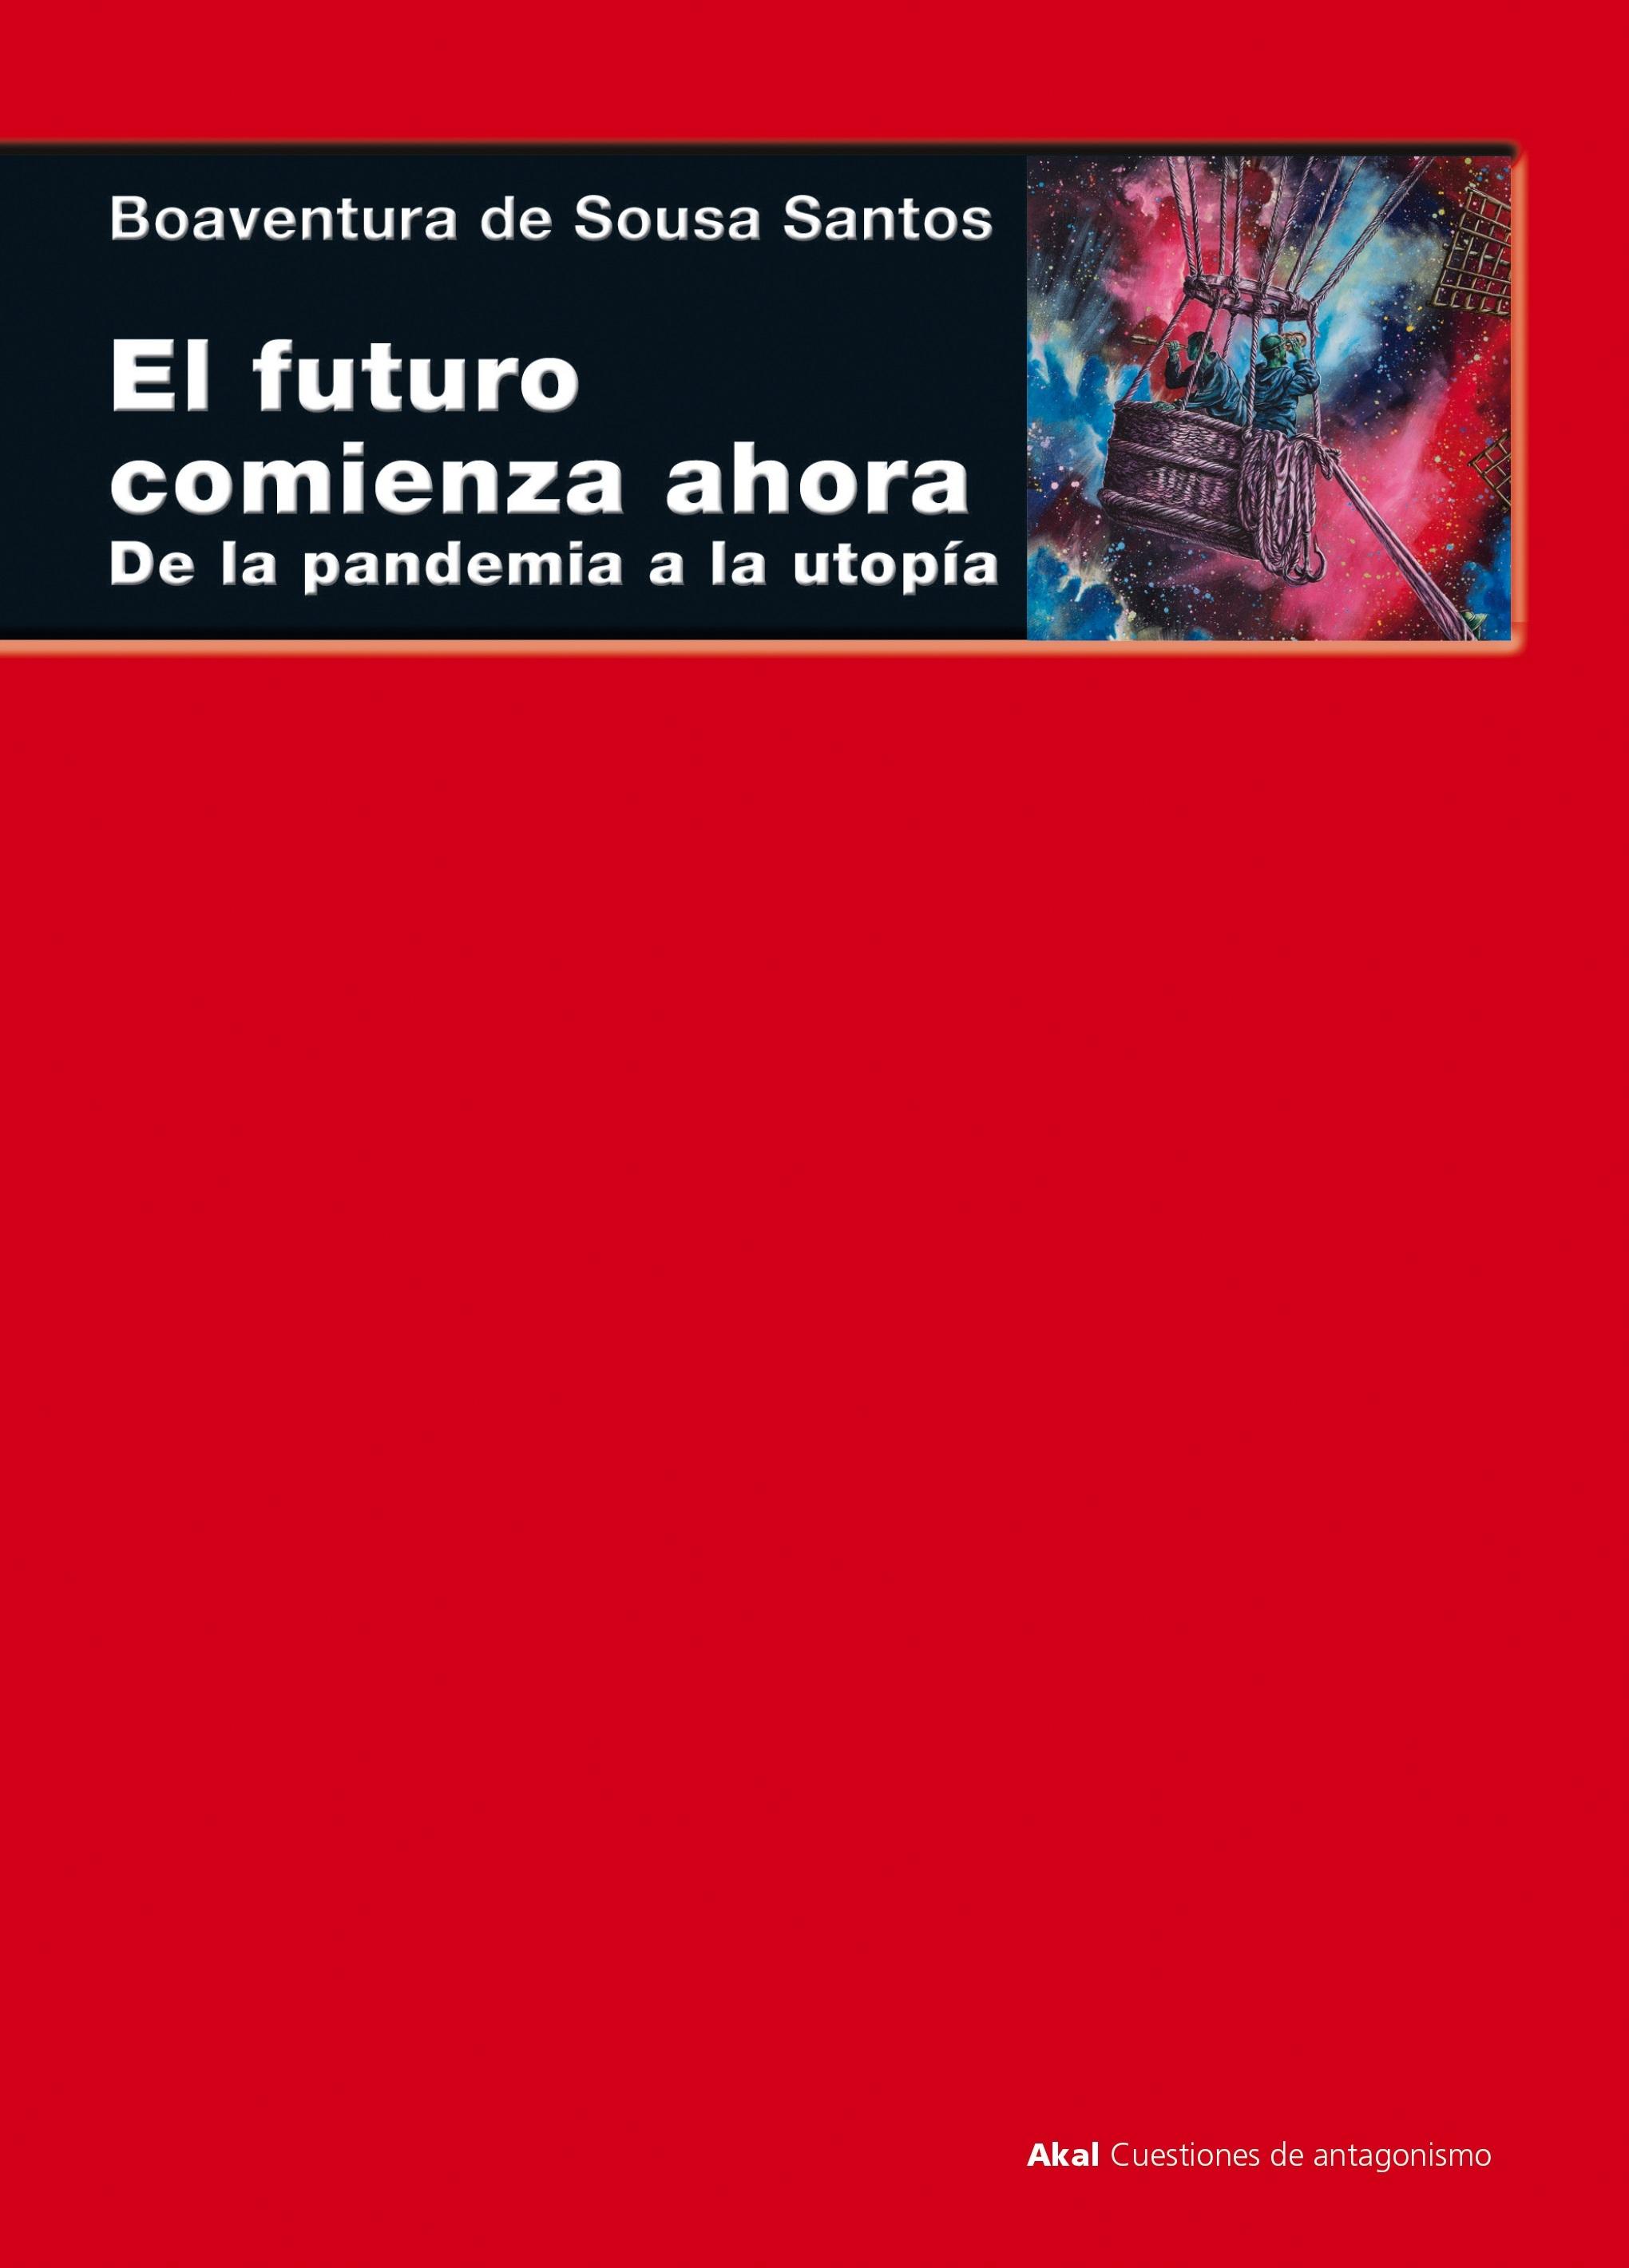 El futuro comienza ahora "De la pandemia a la utopía"